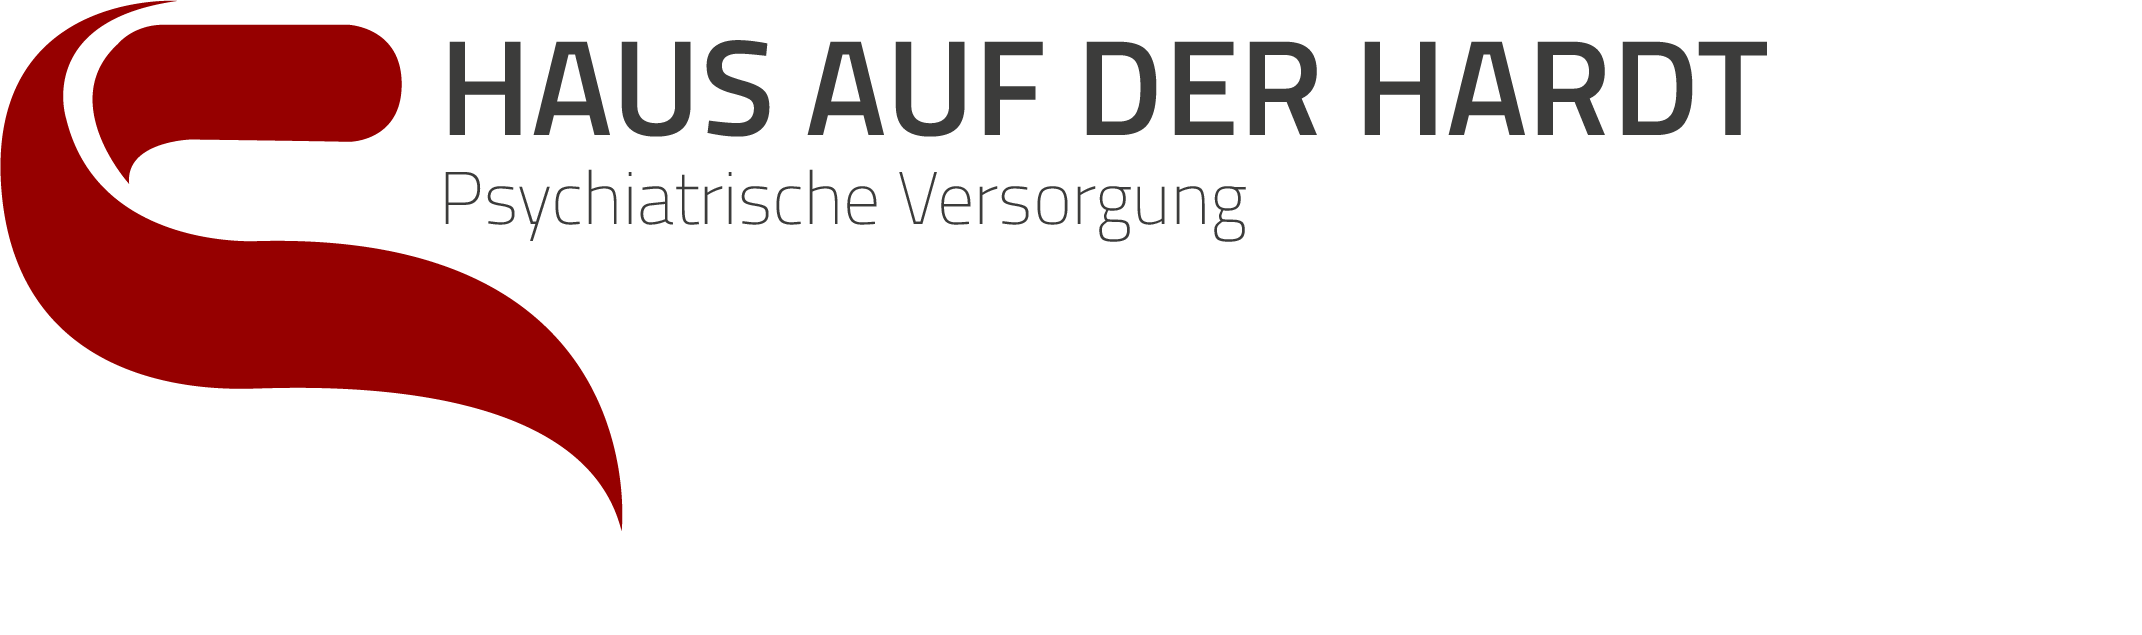 hadh logo